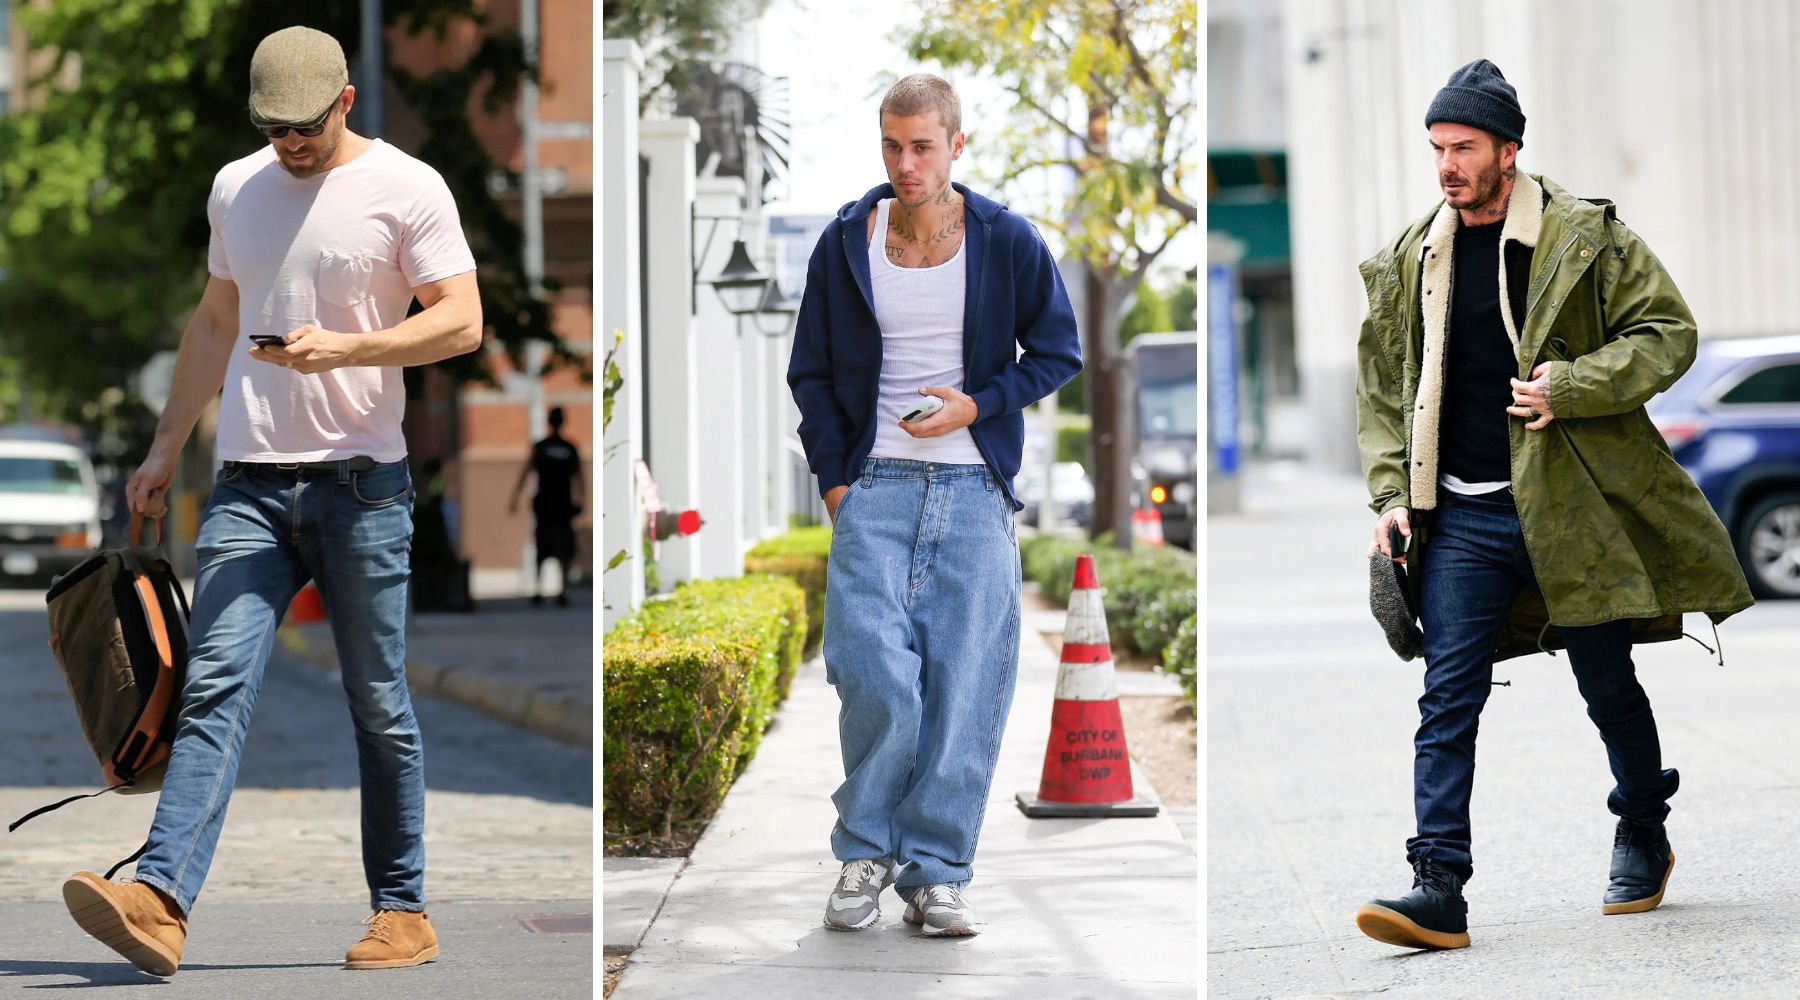 Jadi Lebih Awet dan Tidak Mudah Pudar, Ini 5 Tips Merawat Celana Jeans